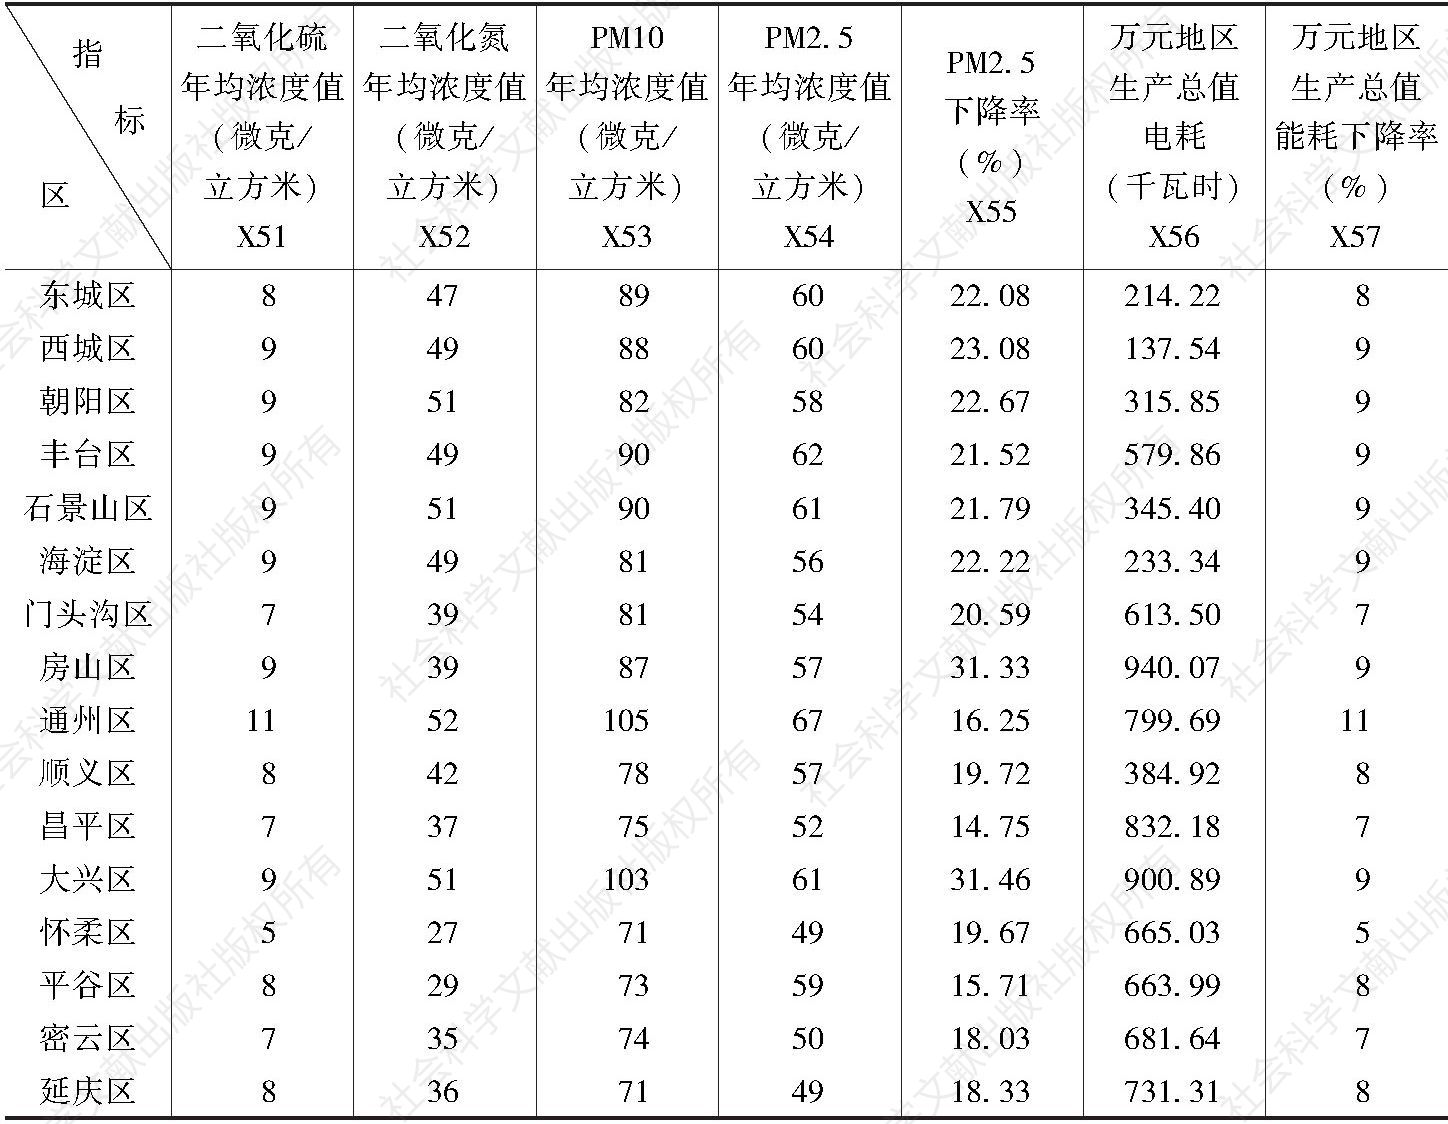 表6 2017年北京市各区环境保护服务各指标的原始水平